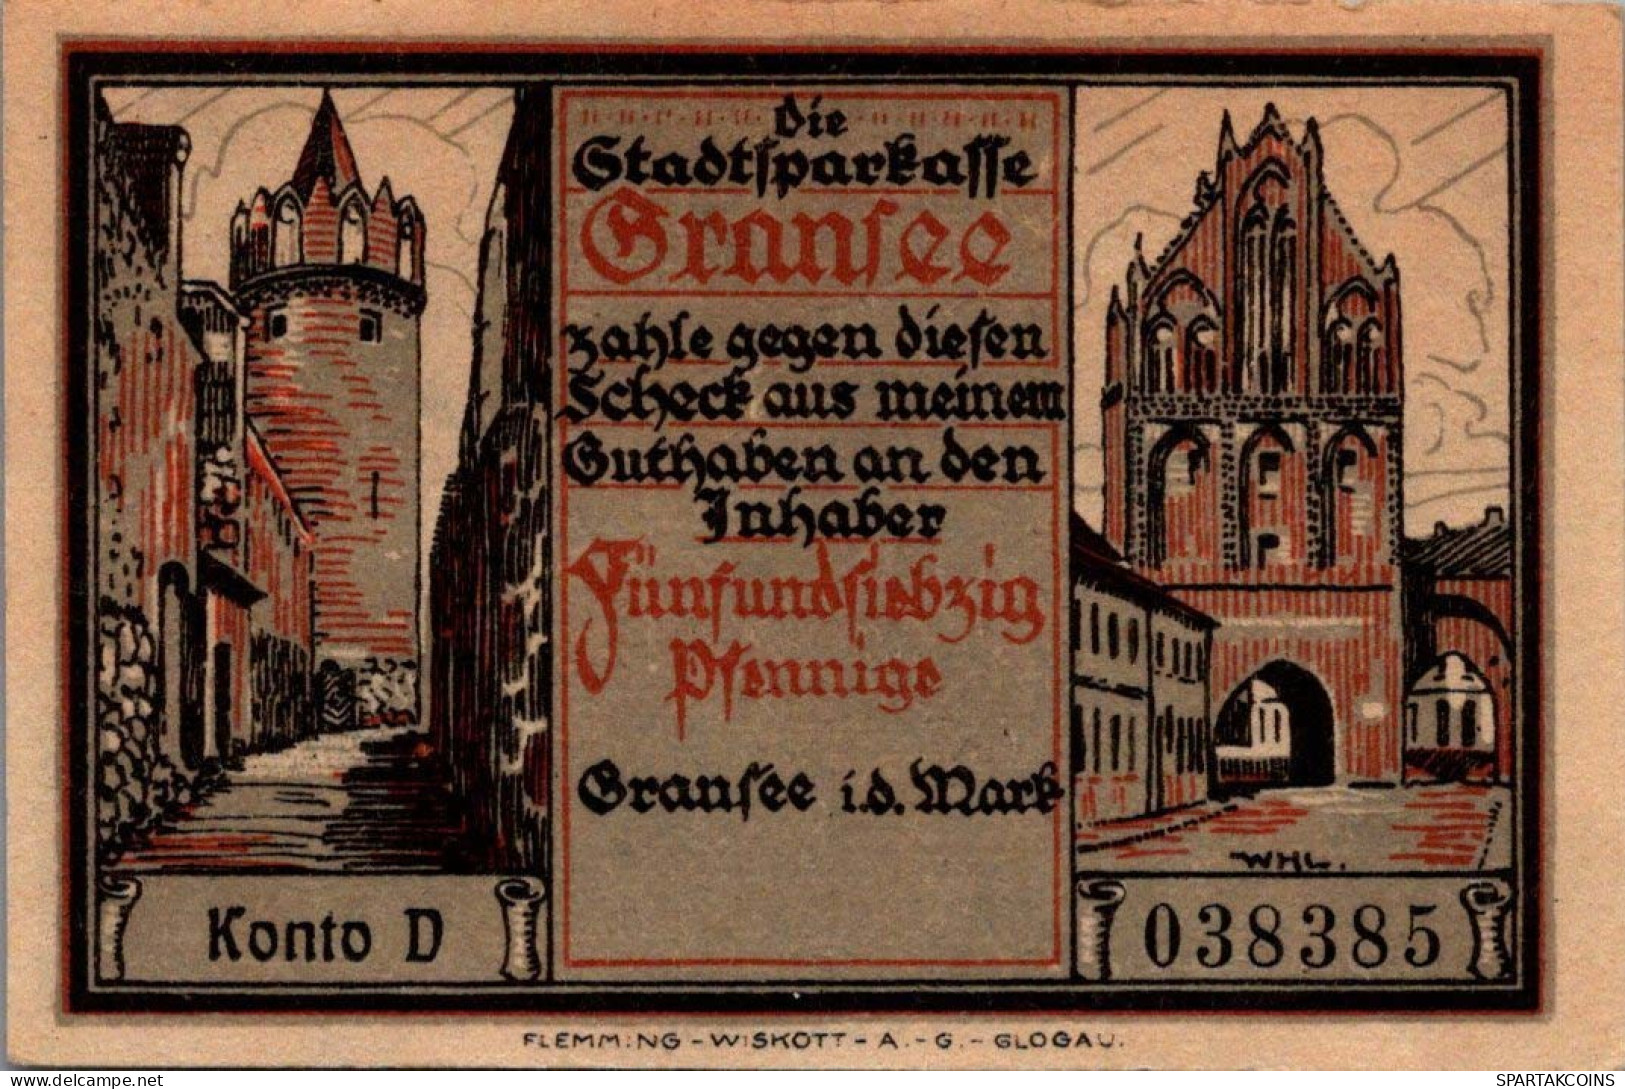 75 PFENNIG 1921 Stadt GRANSEE Brandenburg UNC DEUTSCHLAND Notgeld #PD017 - Lokale Ausgaben